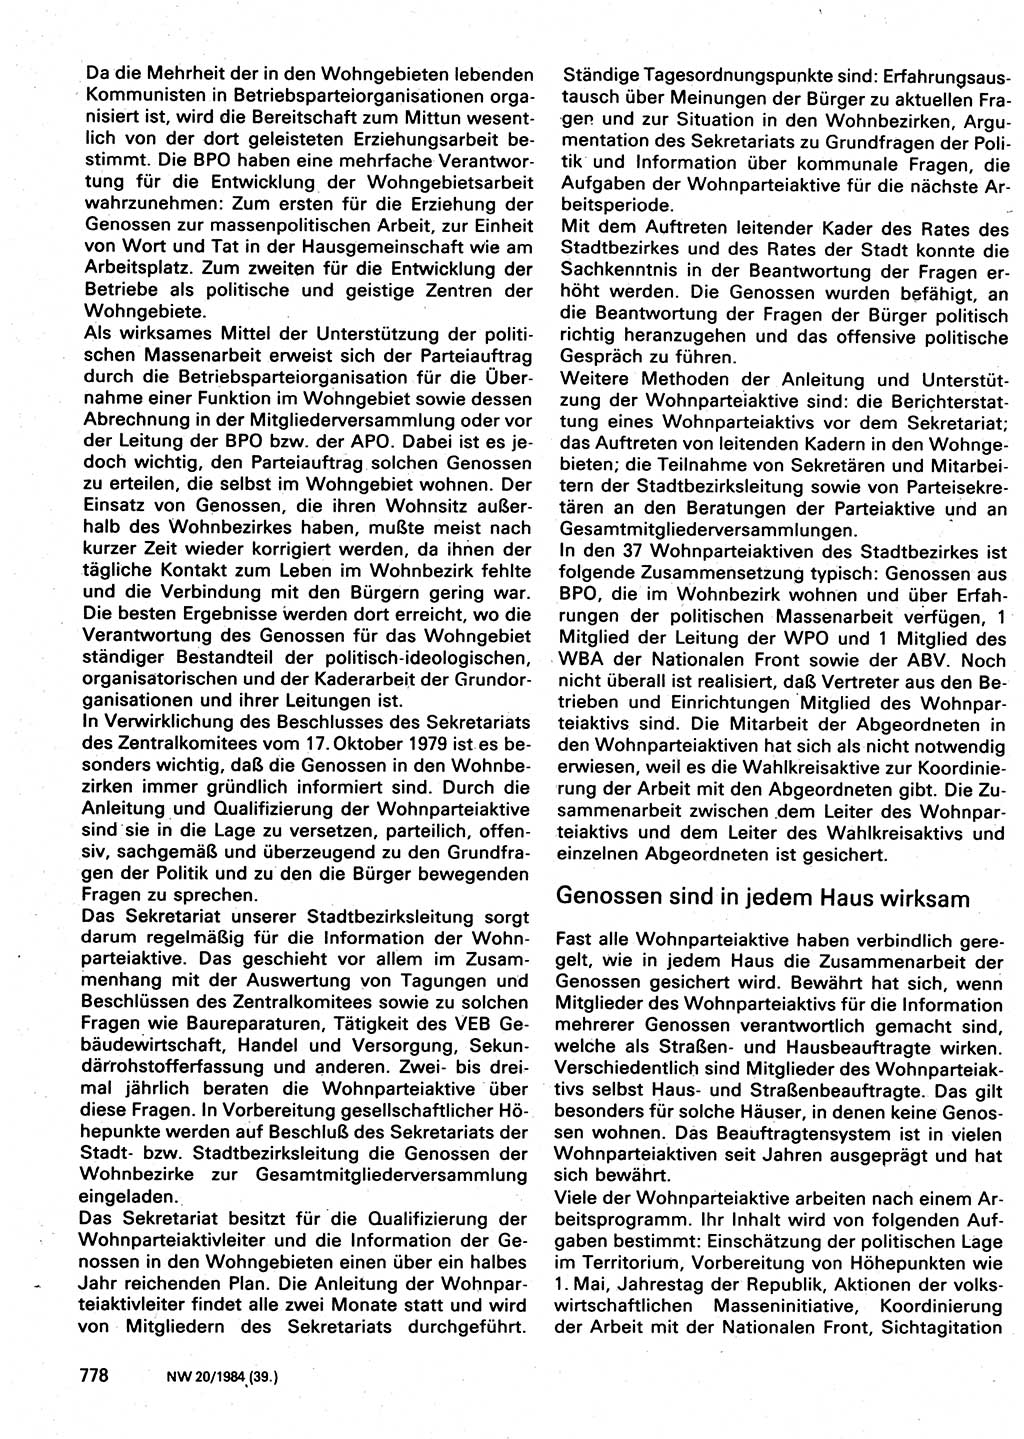 Neuer Weg (NW), Organ des Zentralkomitees (ZK) der SED (Sozialistische Einheitspartei Deutschlands) für Fragen des Parteilebens, 39. Jahrgang [Deutsche Demokratische Republik (DDR)] 1984, Seite 778 (NW ZK SED DDR 1984, S. 778)